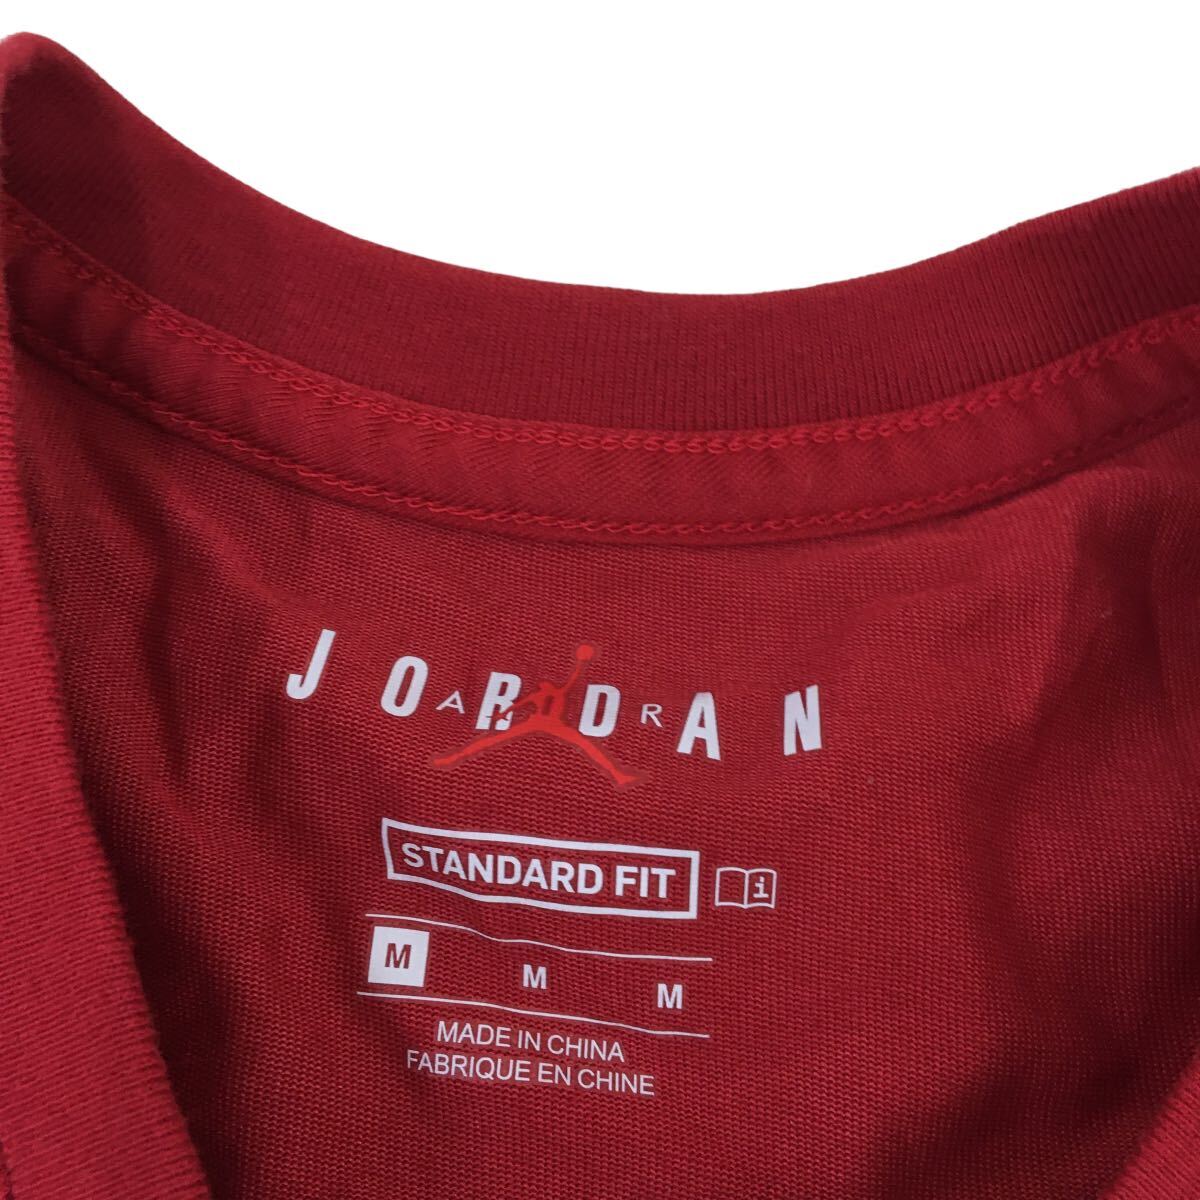 ND172-② Nike AIR JORDAN ナイキ エアジョーダン STANDARD FIT 半袖 Tシャツ トップス プルオーバー クルーネック レッド系 メンズ M_画像6